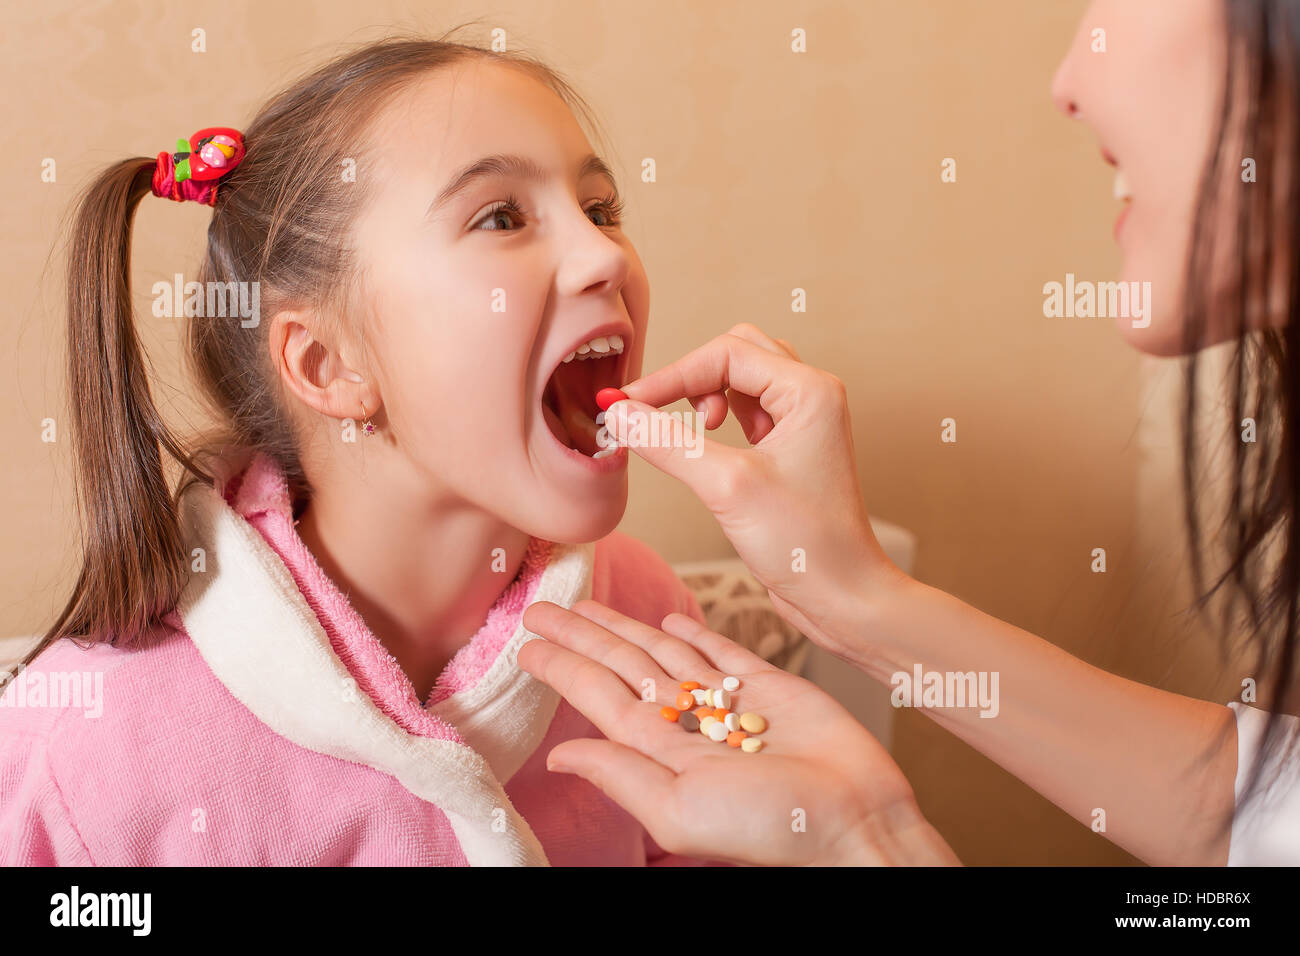 маленькой девочке в рот порно рассказ (120) фото